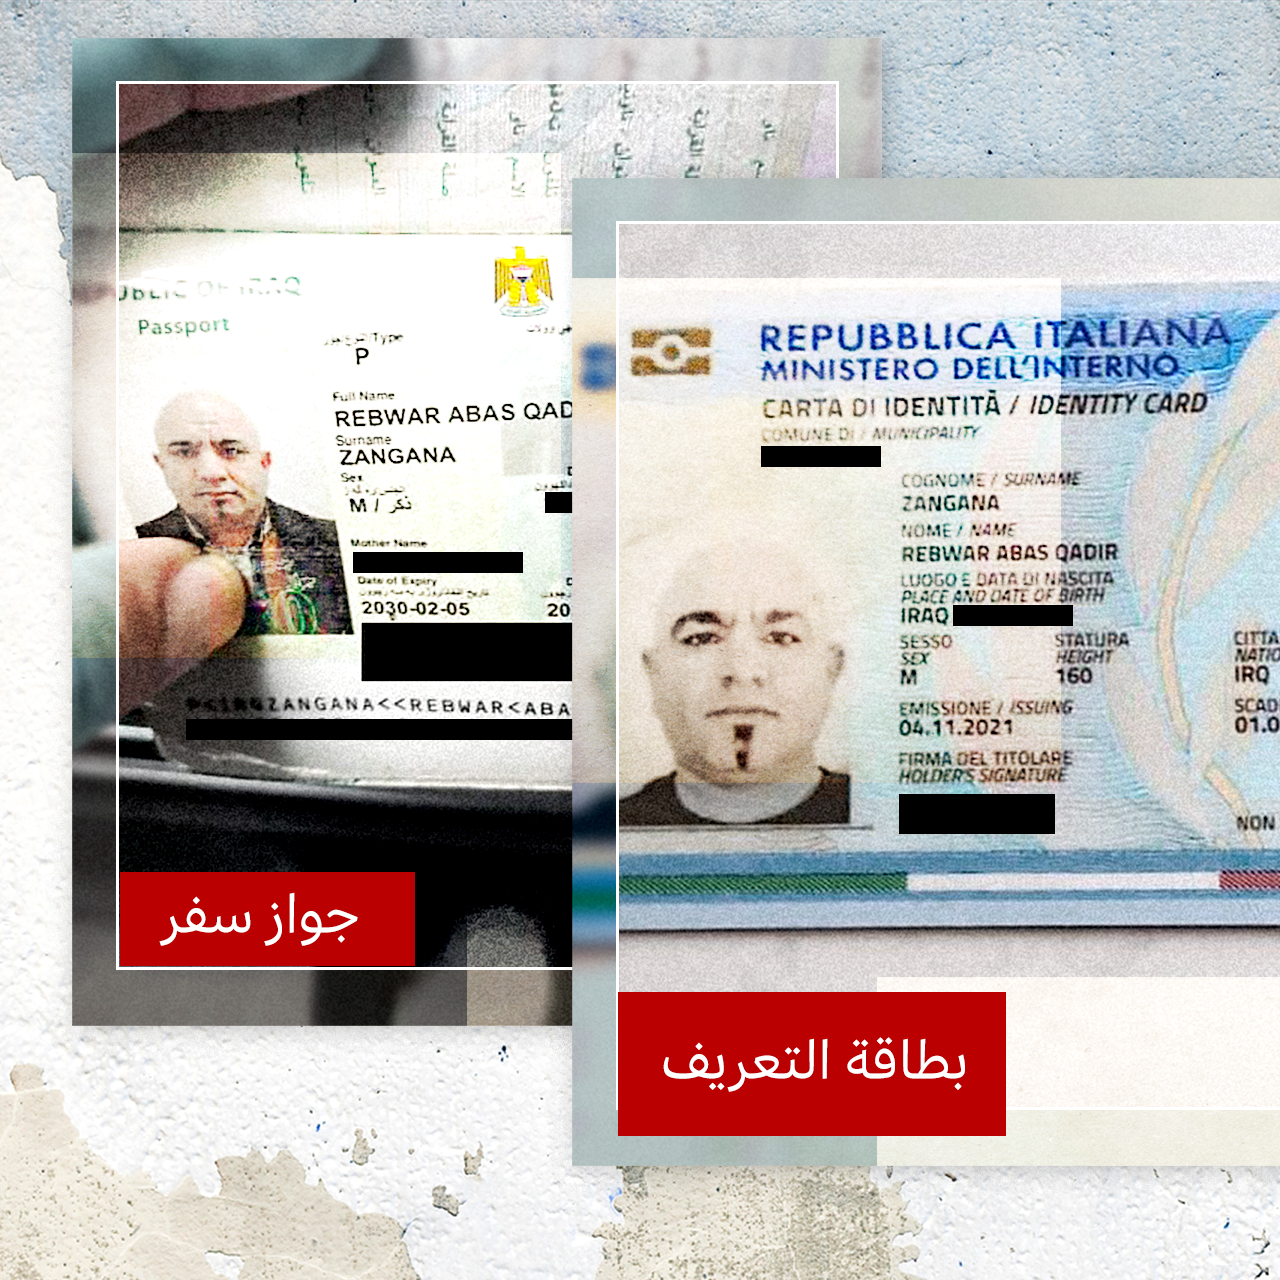 بي بي سي اطلعت على جواز سفر المهرب العراقي واسمه الحركي "جبل" وهويته التي حصل عليها من إيطاليا